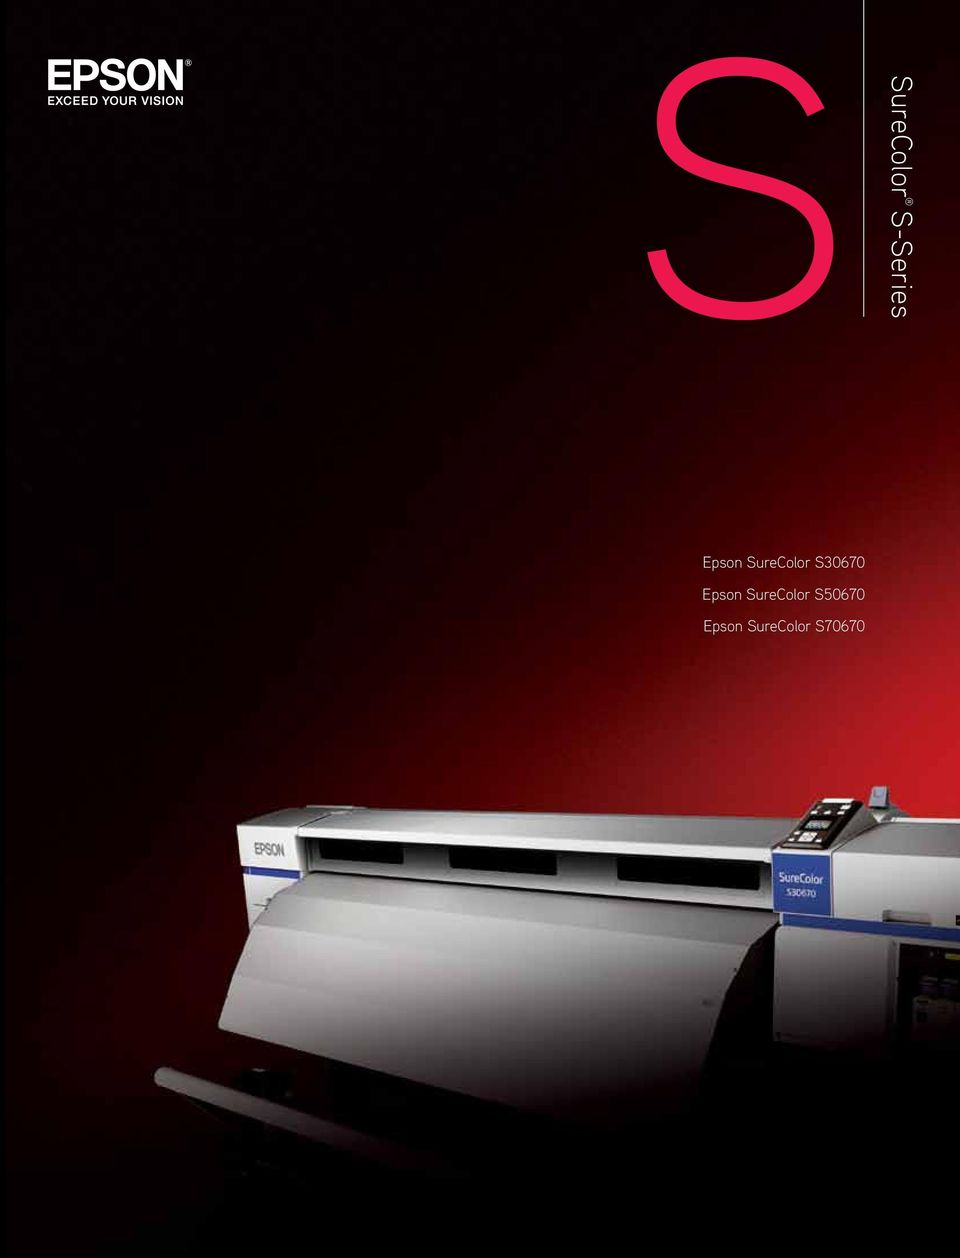 Epson SureColor S50670